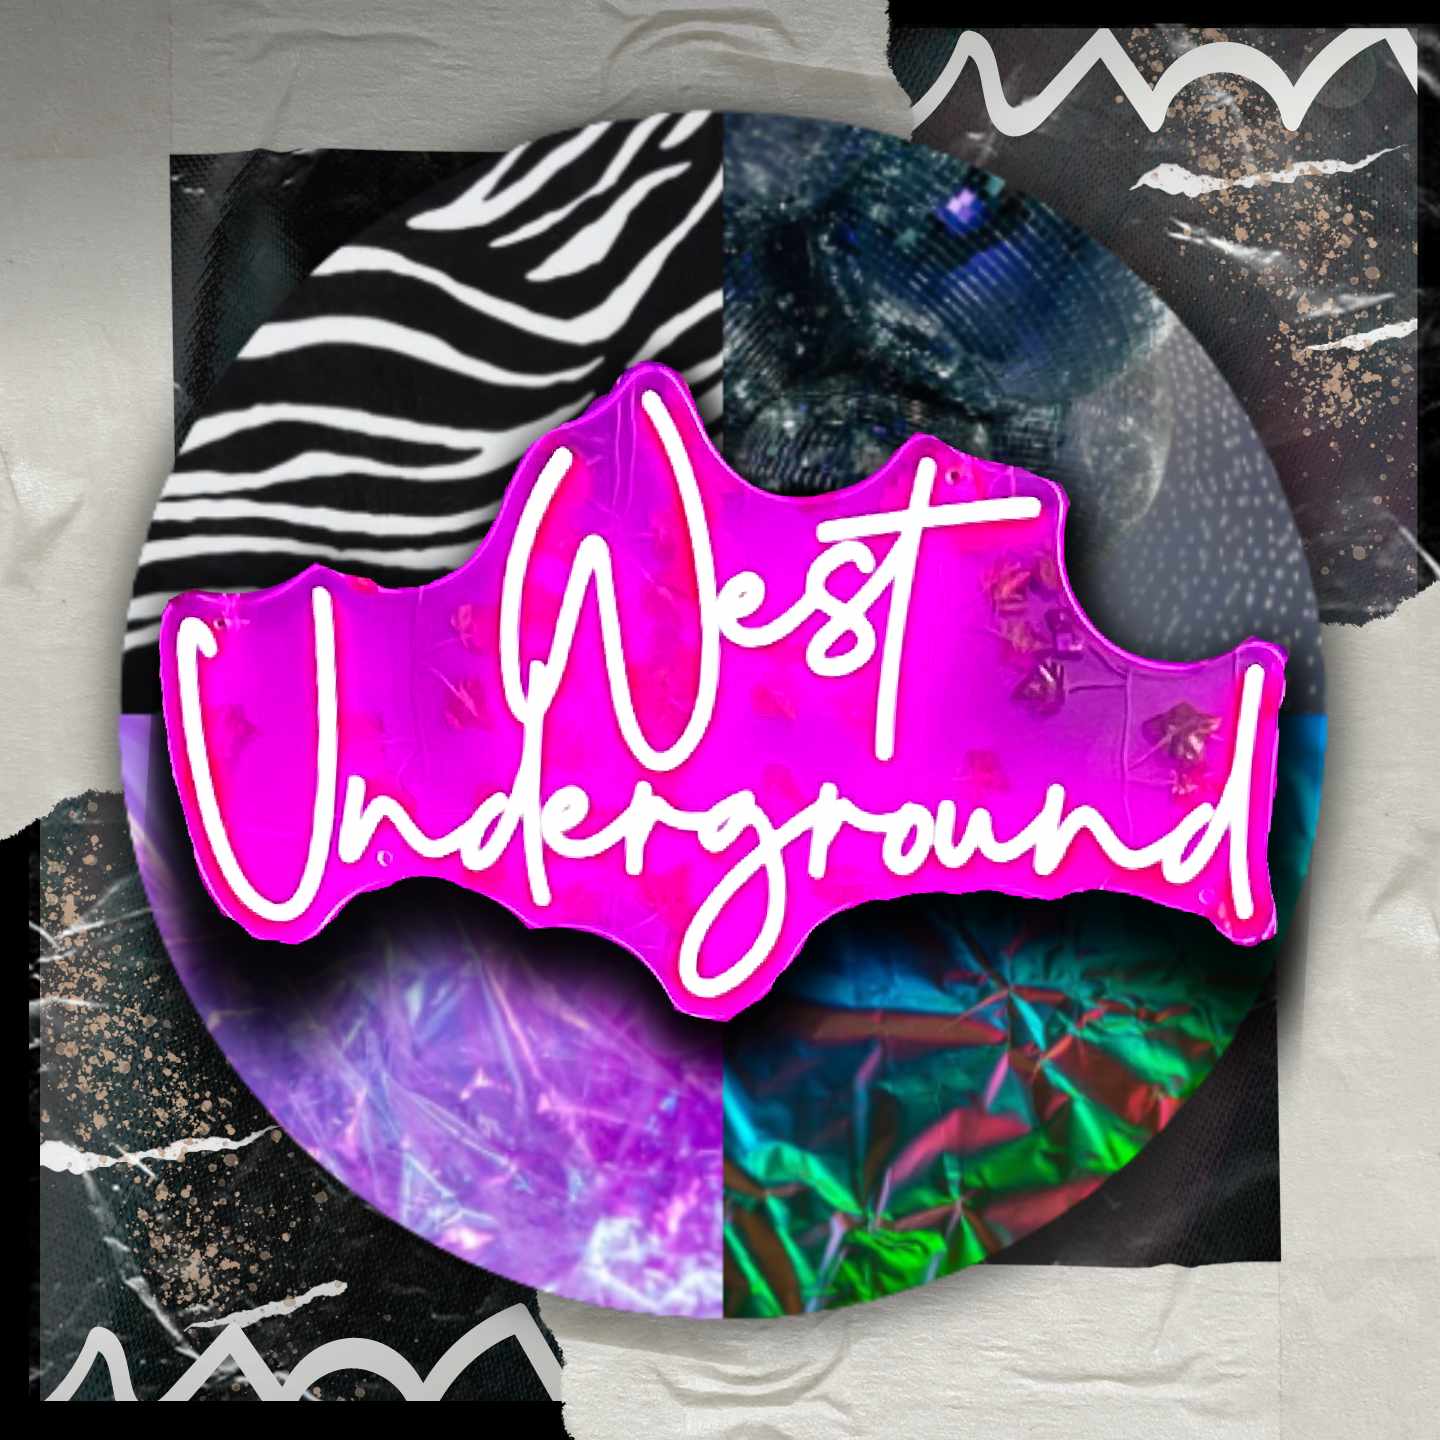 Show artwork for West Underground